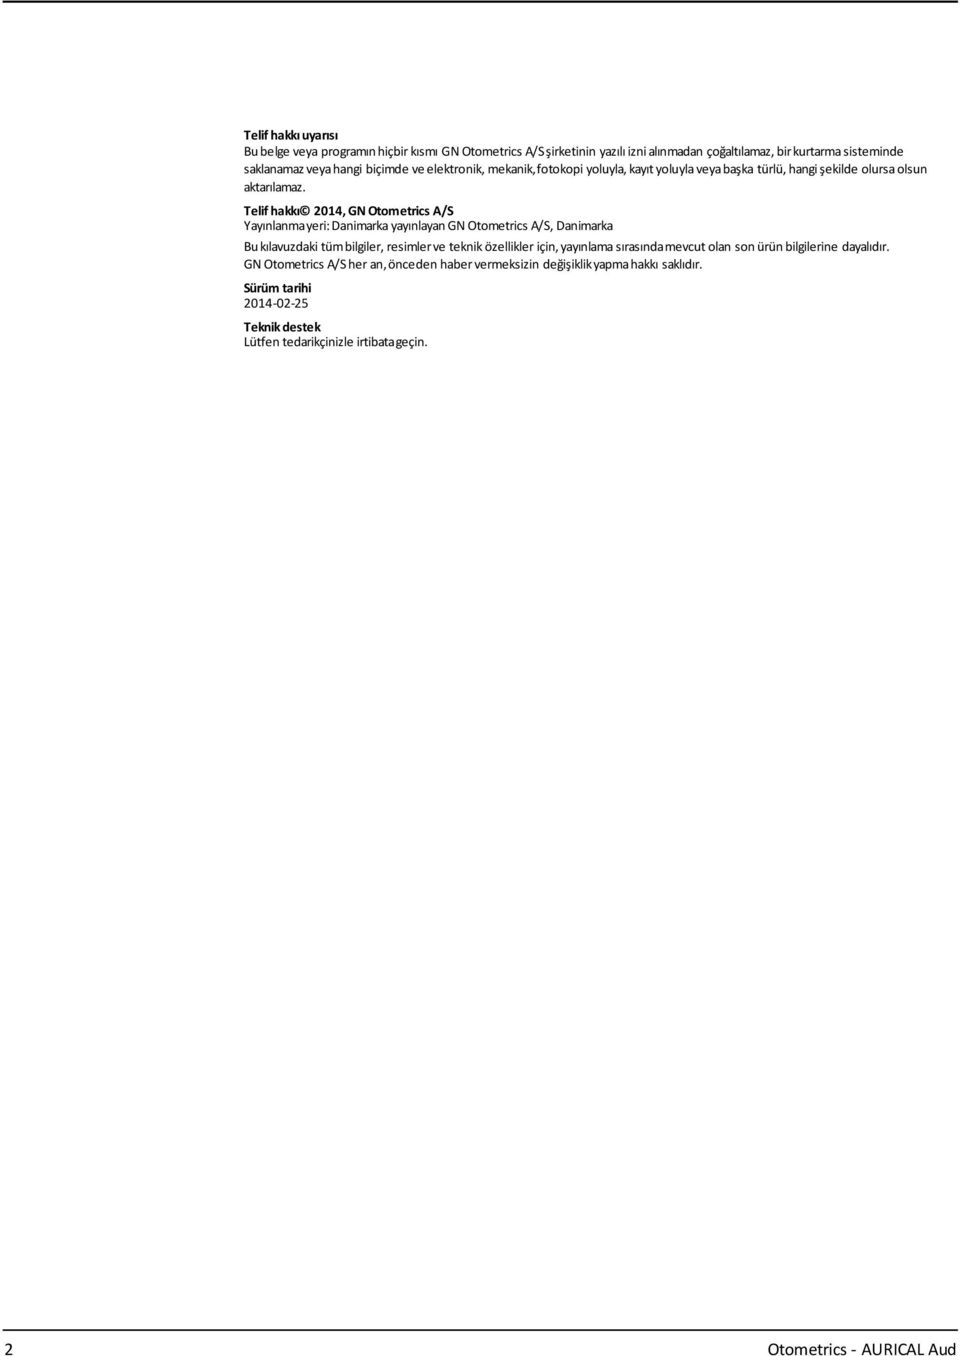 Telif hakkı 2014, GN Otometrics A/S Yayınlanmayeri:Danimarka yayınlayangn Otometrics A/S, Danimarka Bukılavuzdaki tümbilgiler, resimlerve teknik özellikler için, yayınlama